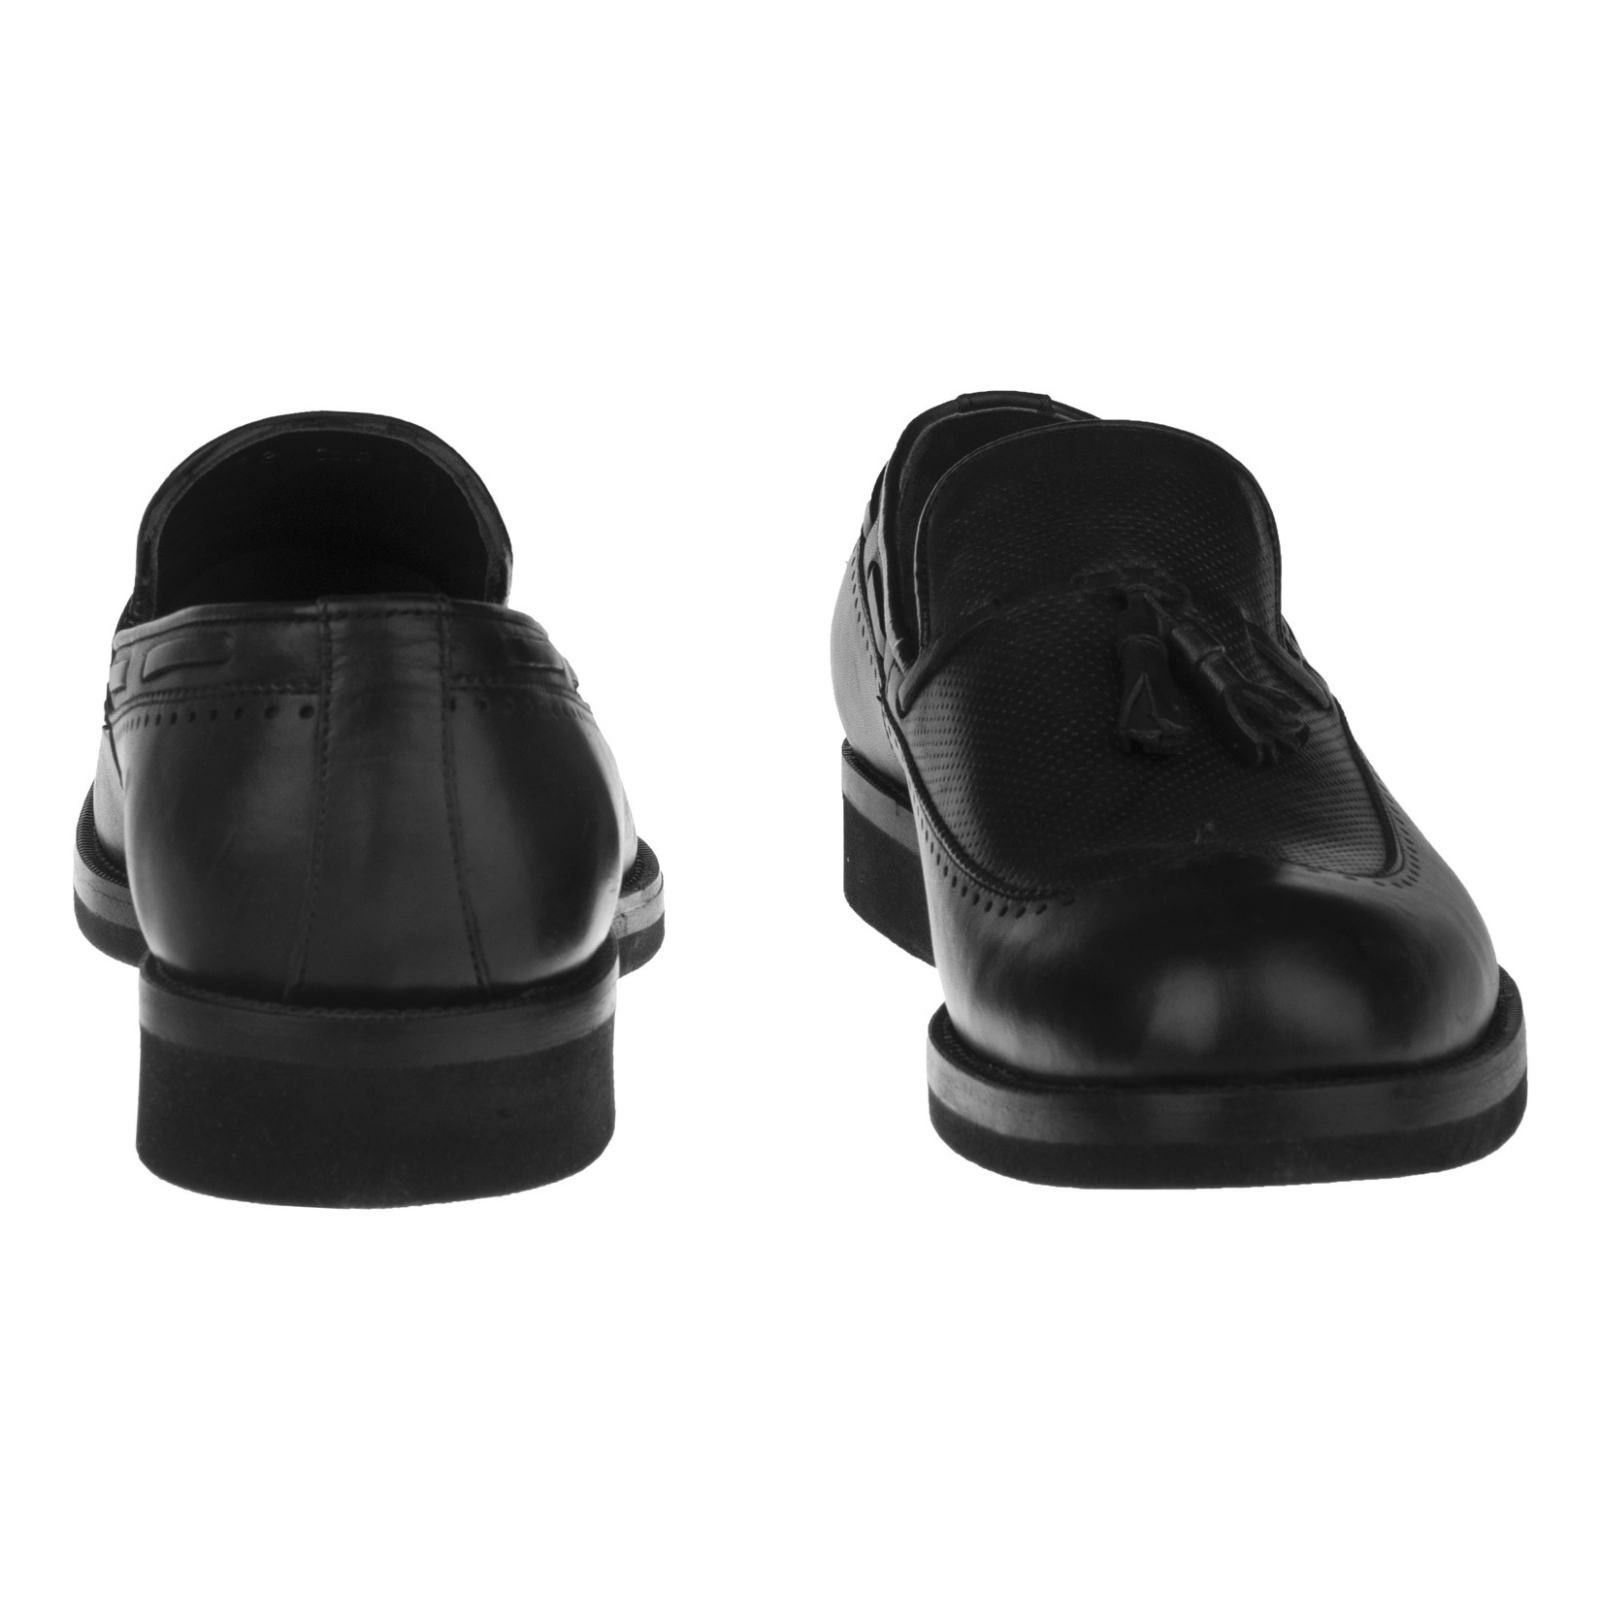 کفش مردانه بلوط مدل چرم طبیعی کد A503101 -  - 4